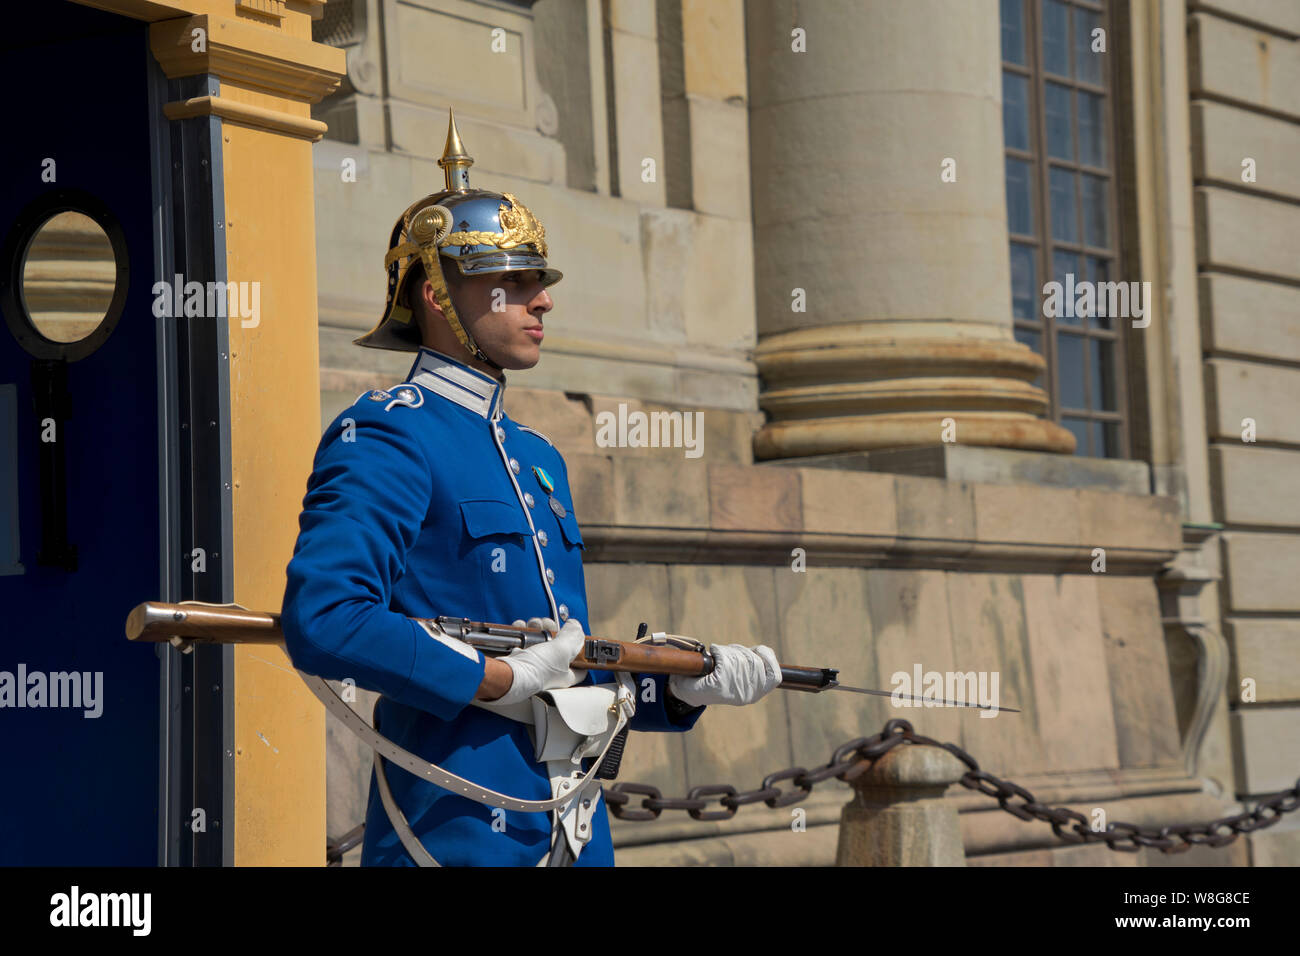 Garde côtière canadienne en uniforme de cérémonie à l'extérieur du Palais Royal de Stockholm, suédois Banque D'Images